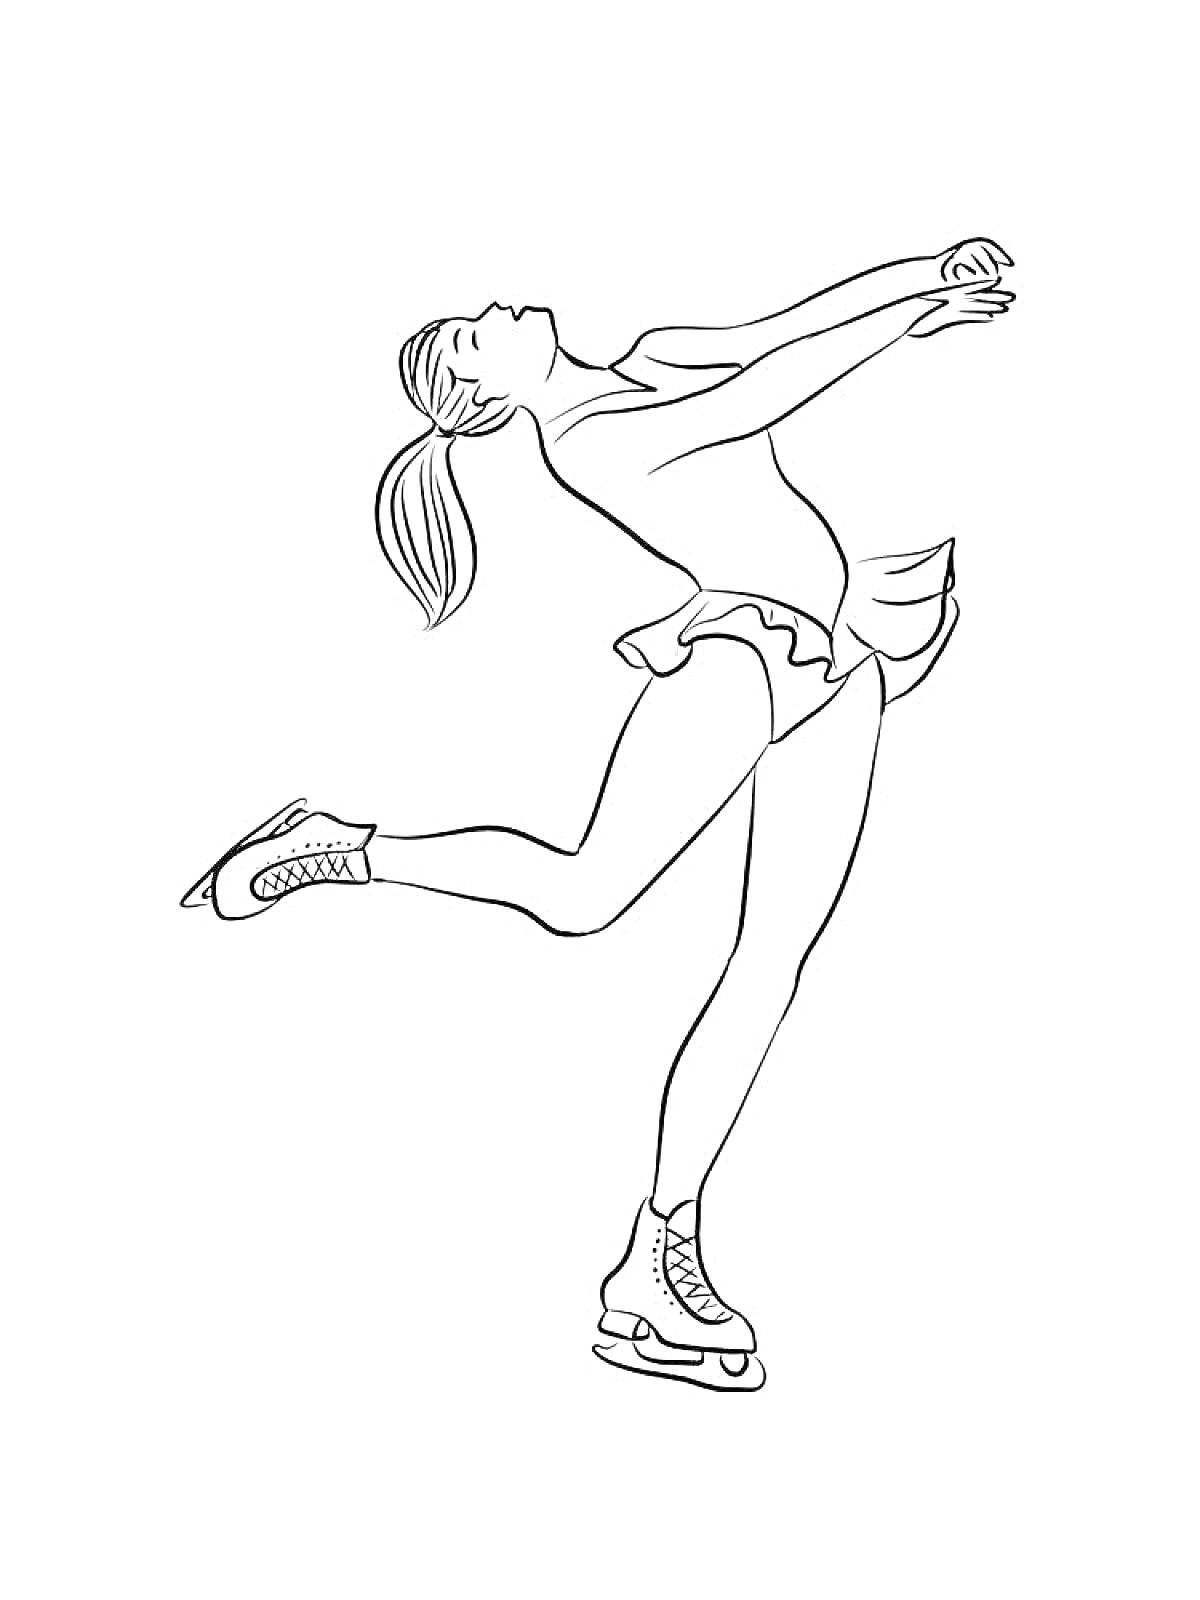 Фигуристка в прыжке с поднятыми руками, волосы собраны в хвост, платье для фигурного катания, коньки на ногах